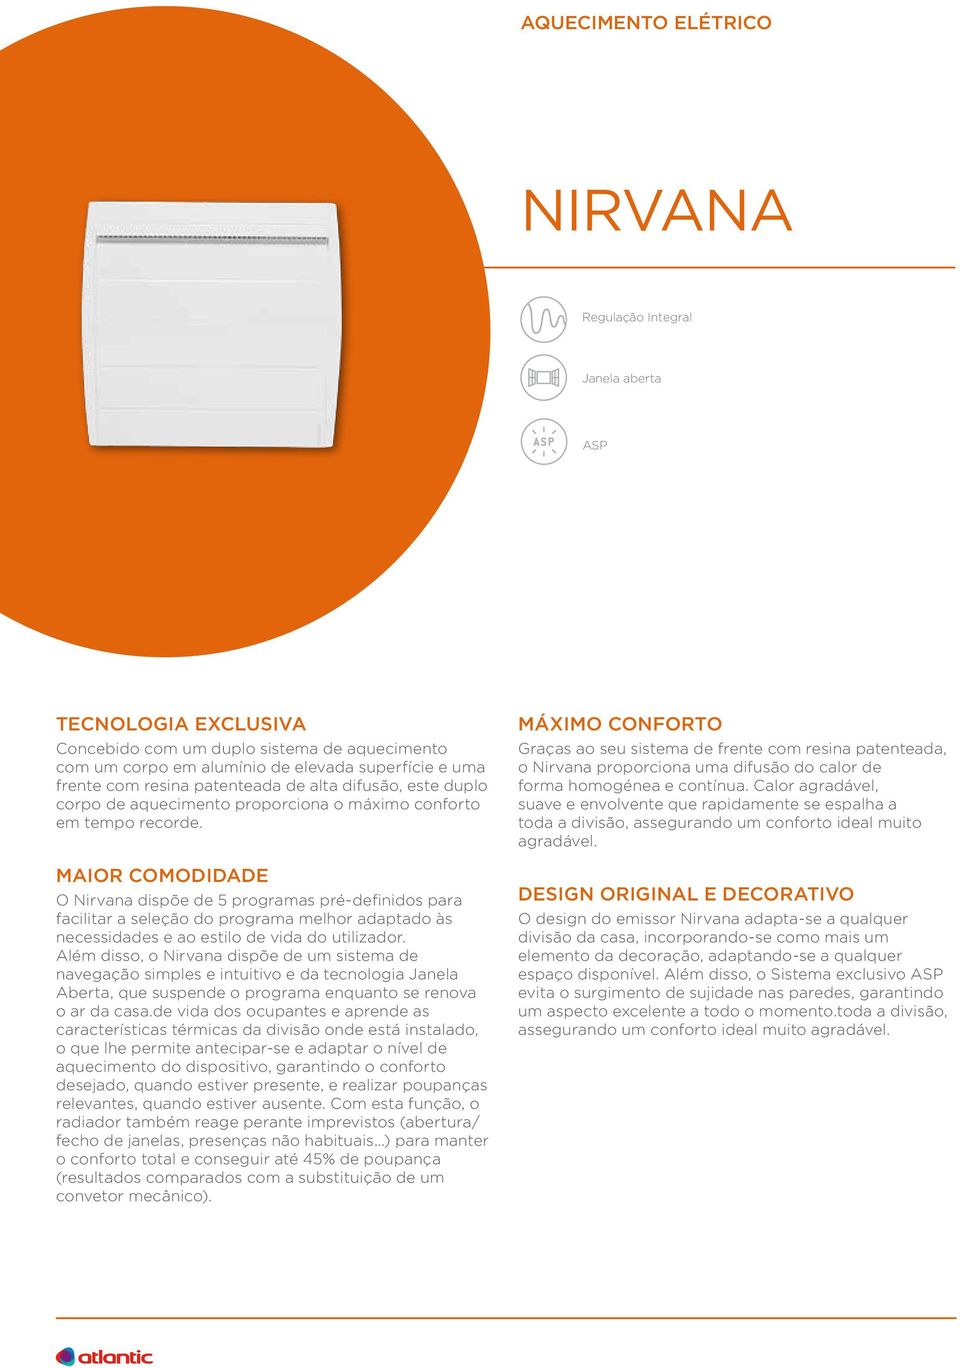 MAIOR COMODIDADE O Nirvana dispõe de 5 programas pré-definidos para facilitar a seleção do programa melhor adaptado às necessidades e ao estilo de vida do utilizador.